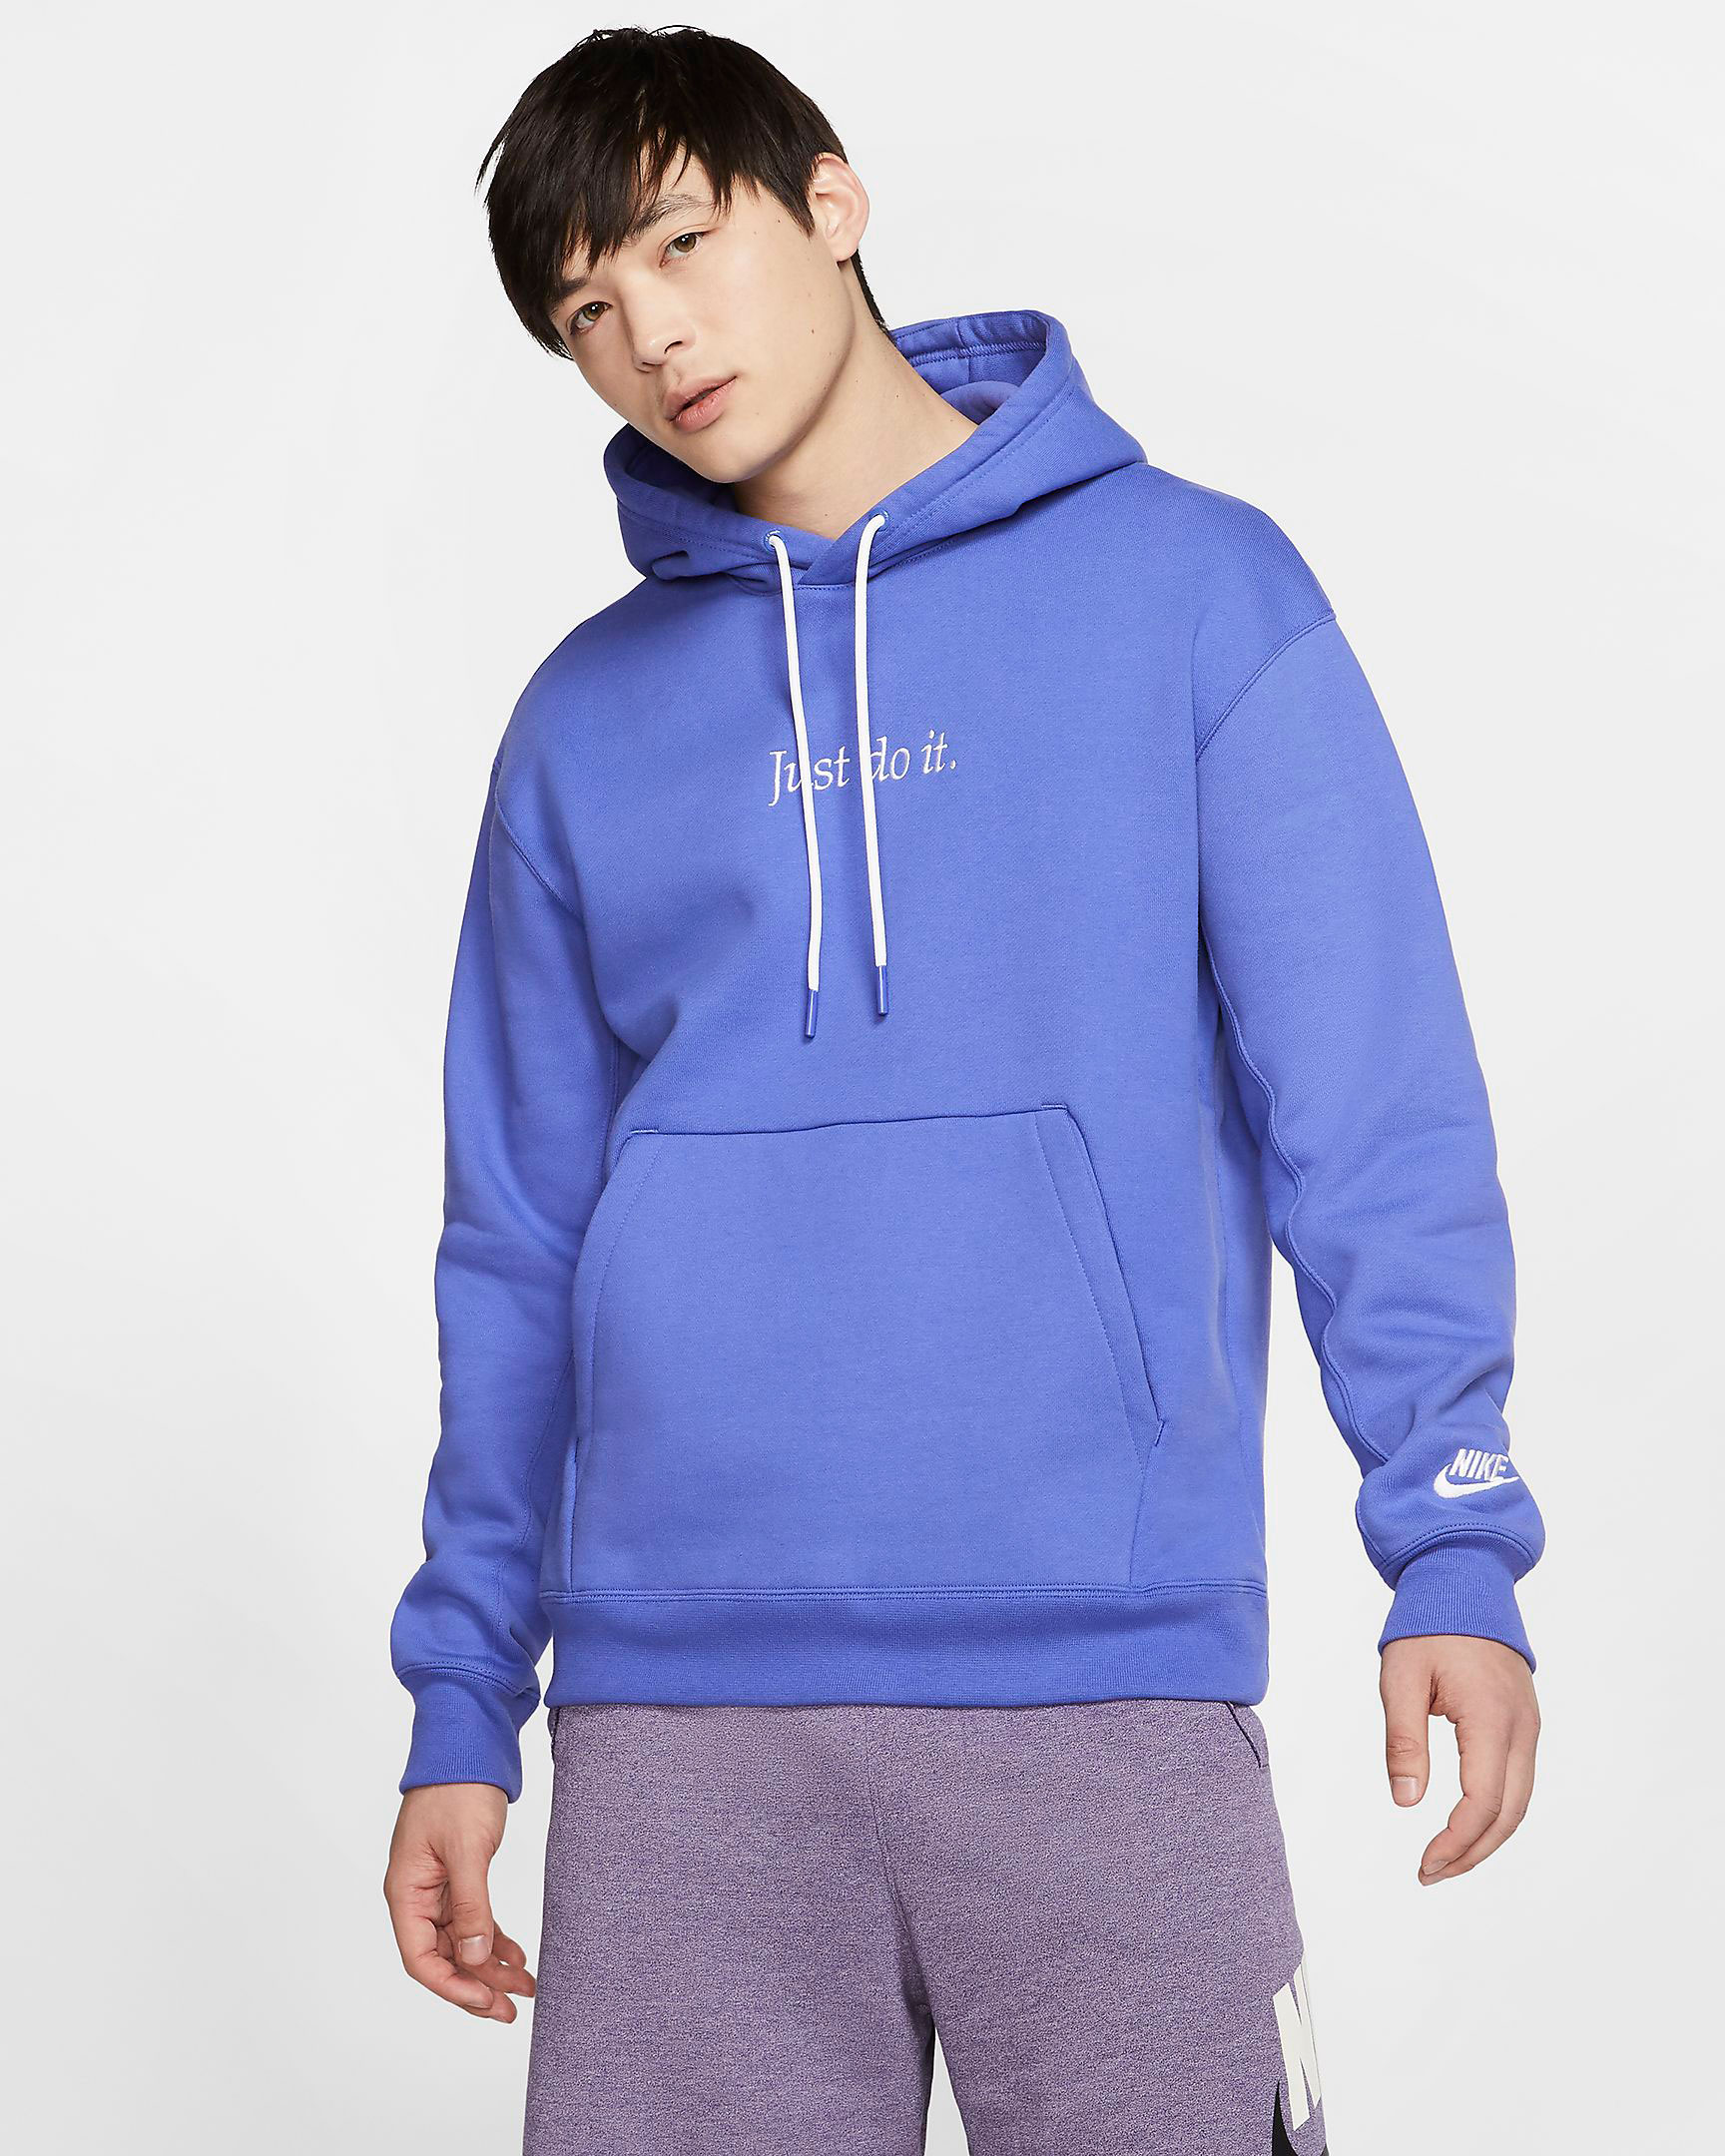 nike-sportswear-jdi-just-do-it-hoodie-purple